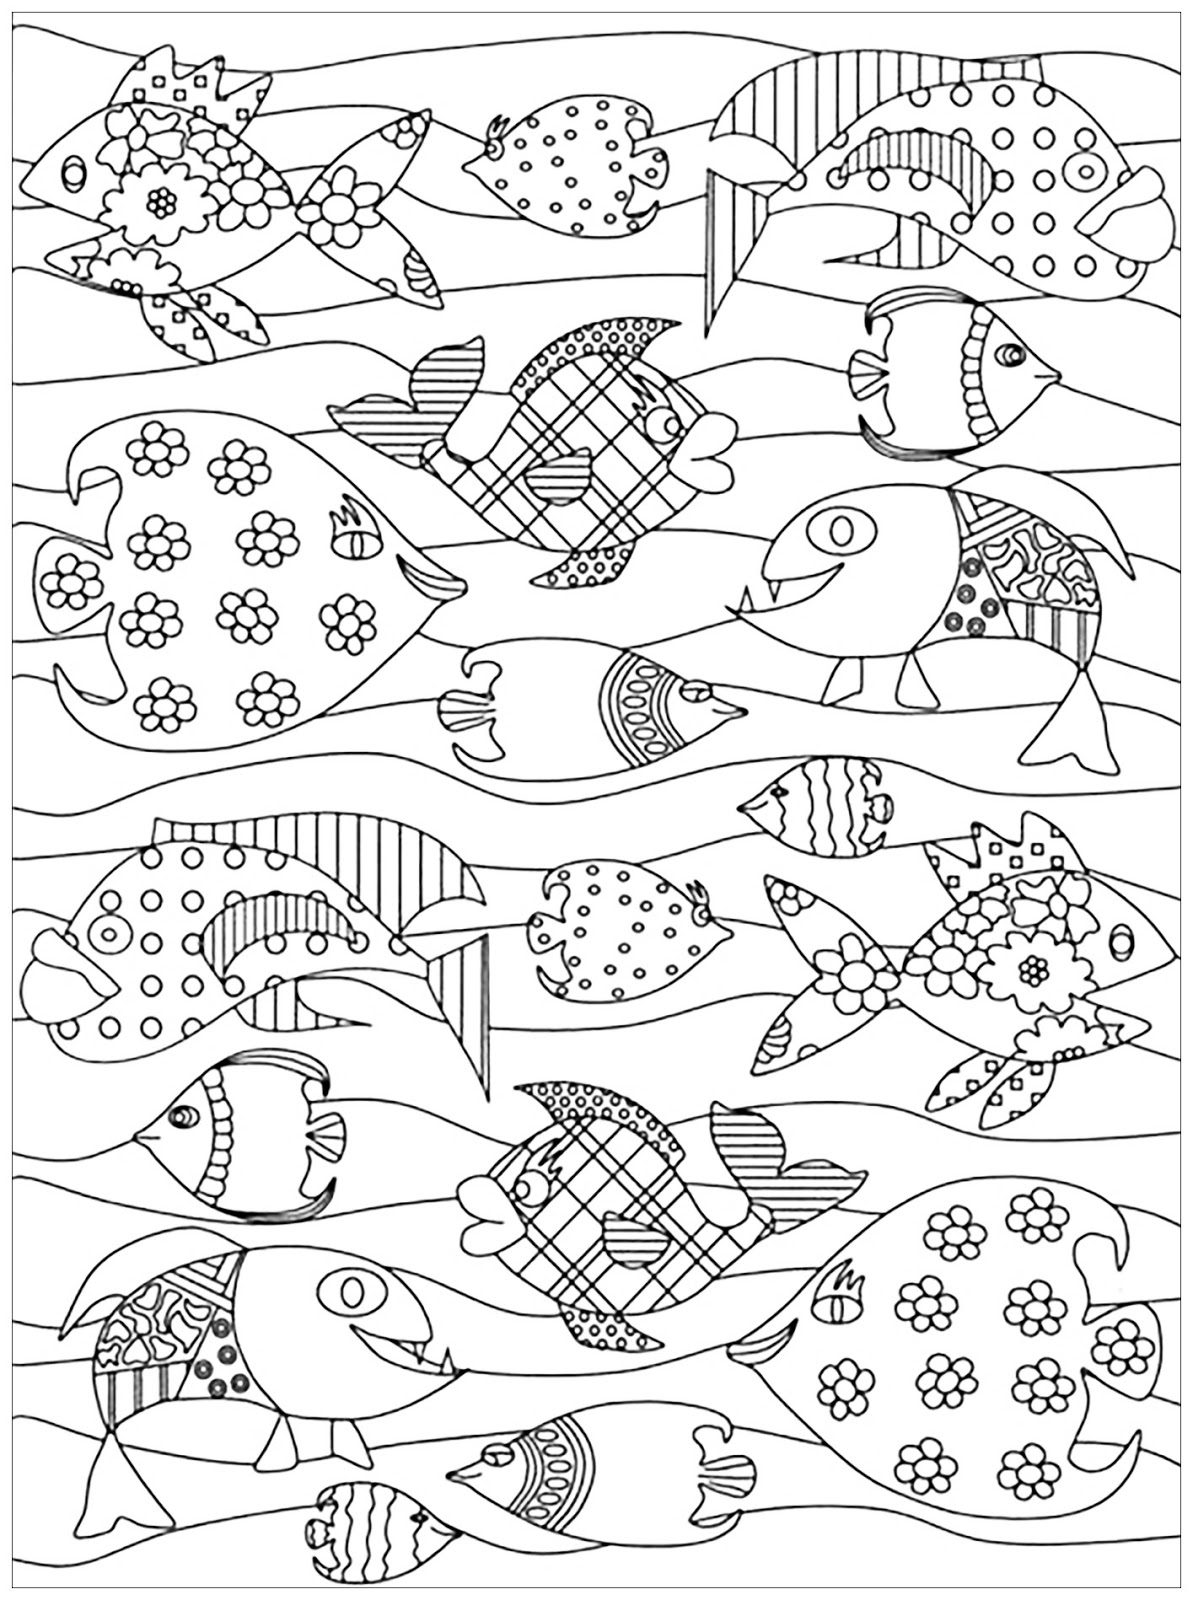 Tranh tô màu con cá nhiều hình dạng khác nhau